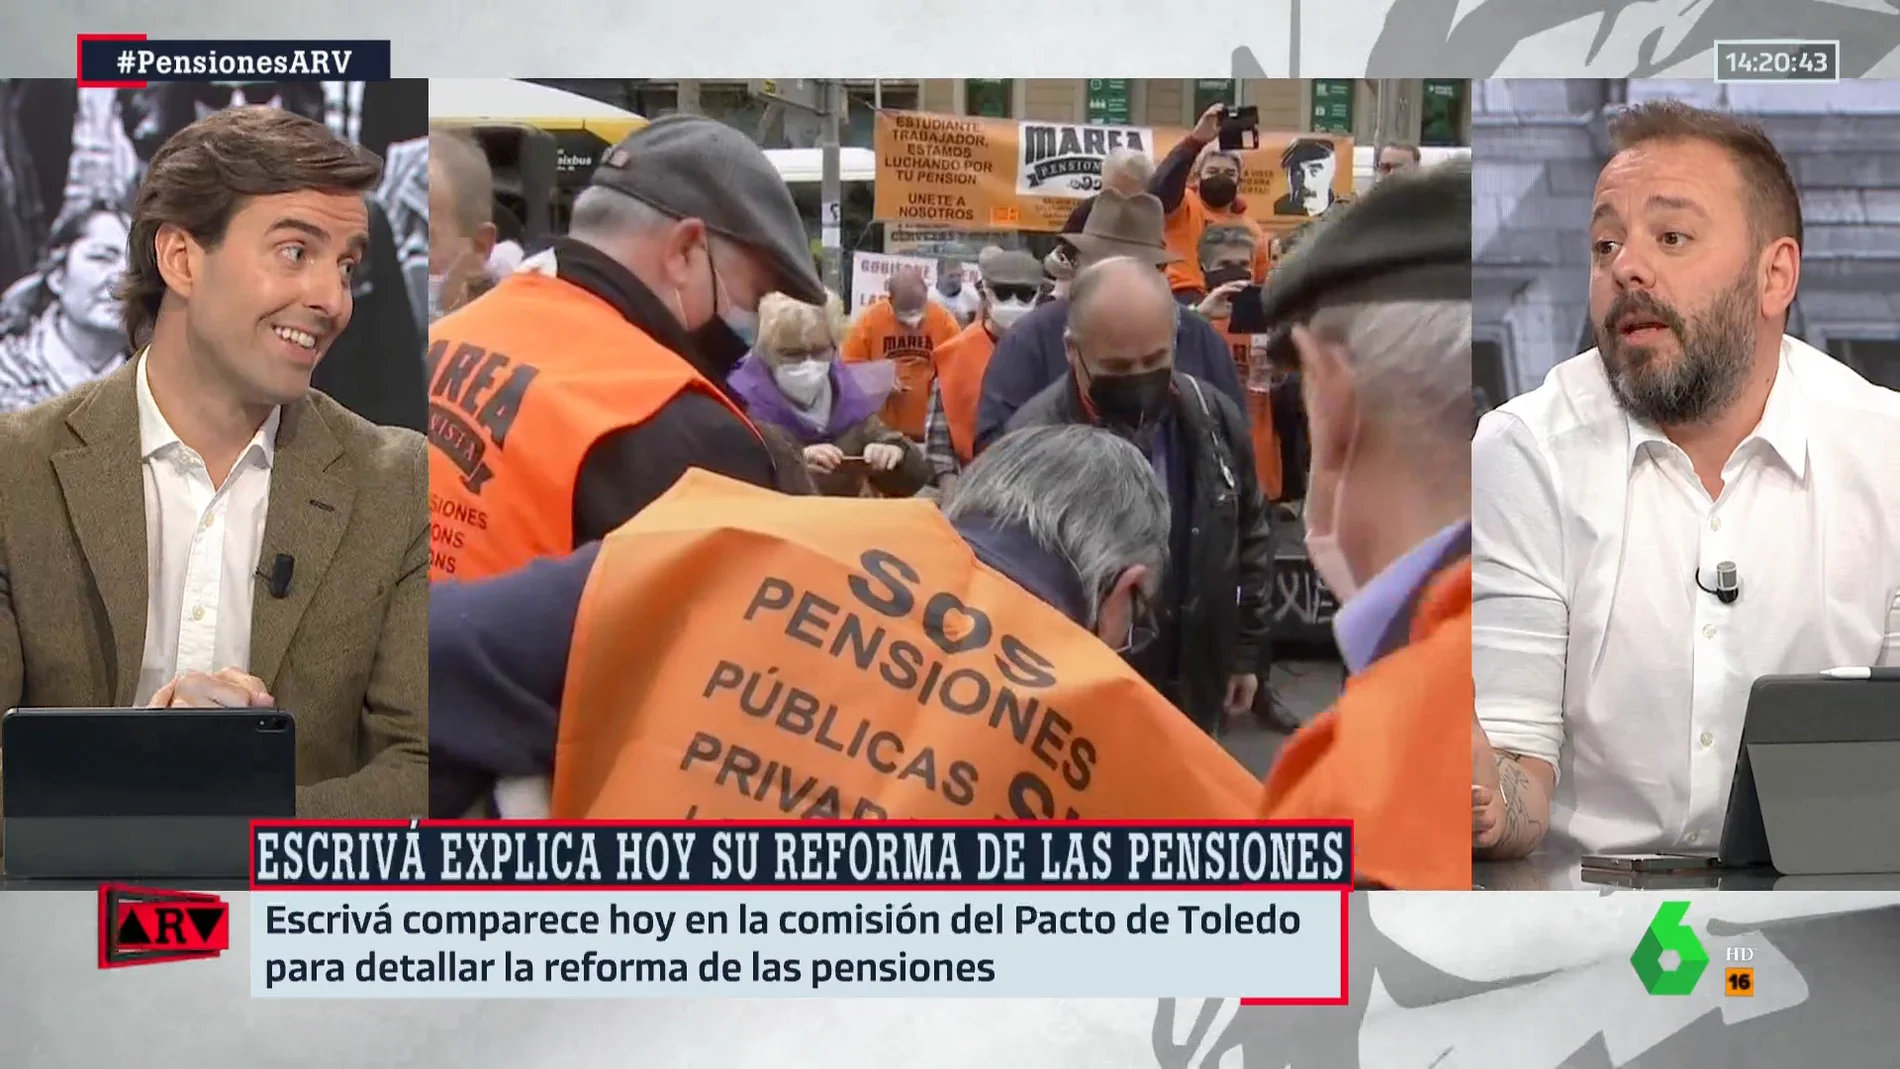 Antonio Maestre: "Cuando la izquierda gobierna las pensiones están garantizadas y cuando está la derecha eso no sucede"